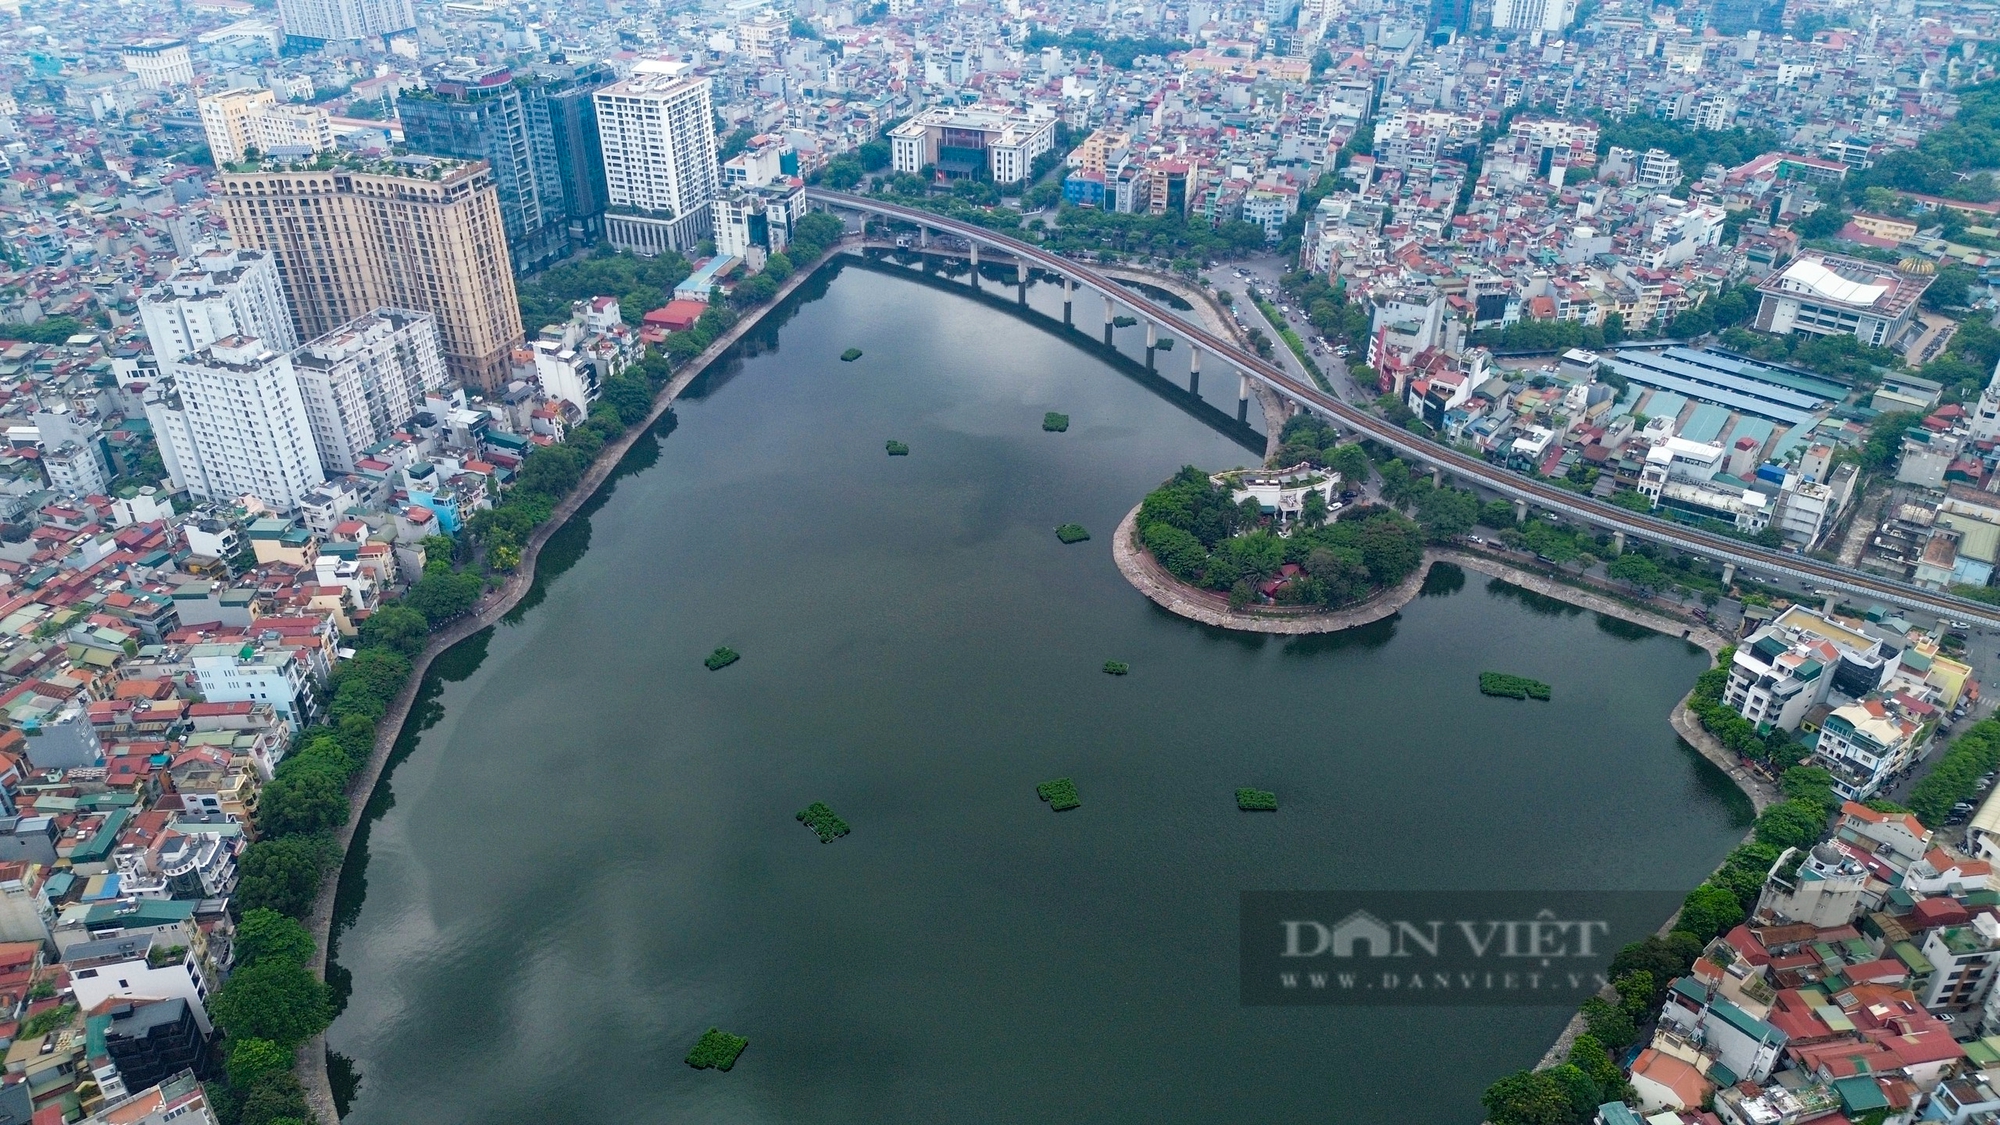 Khu vực hồ nước rộng 13,5 ha được Hà Nội chọn phát triển kinh tế đêm có gì đặc biệt?- Ảnh 1.